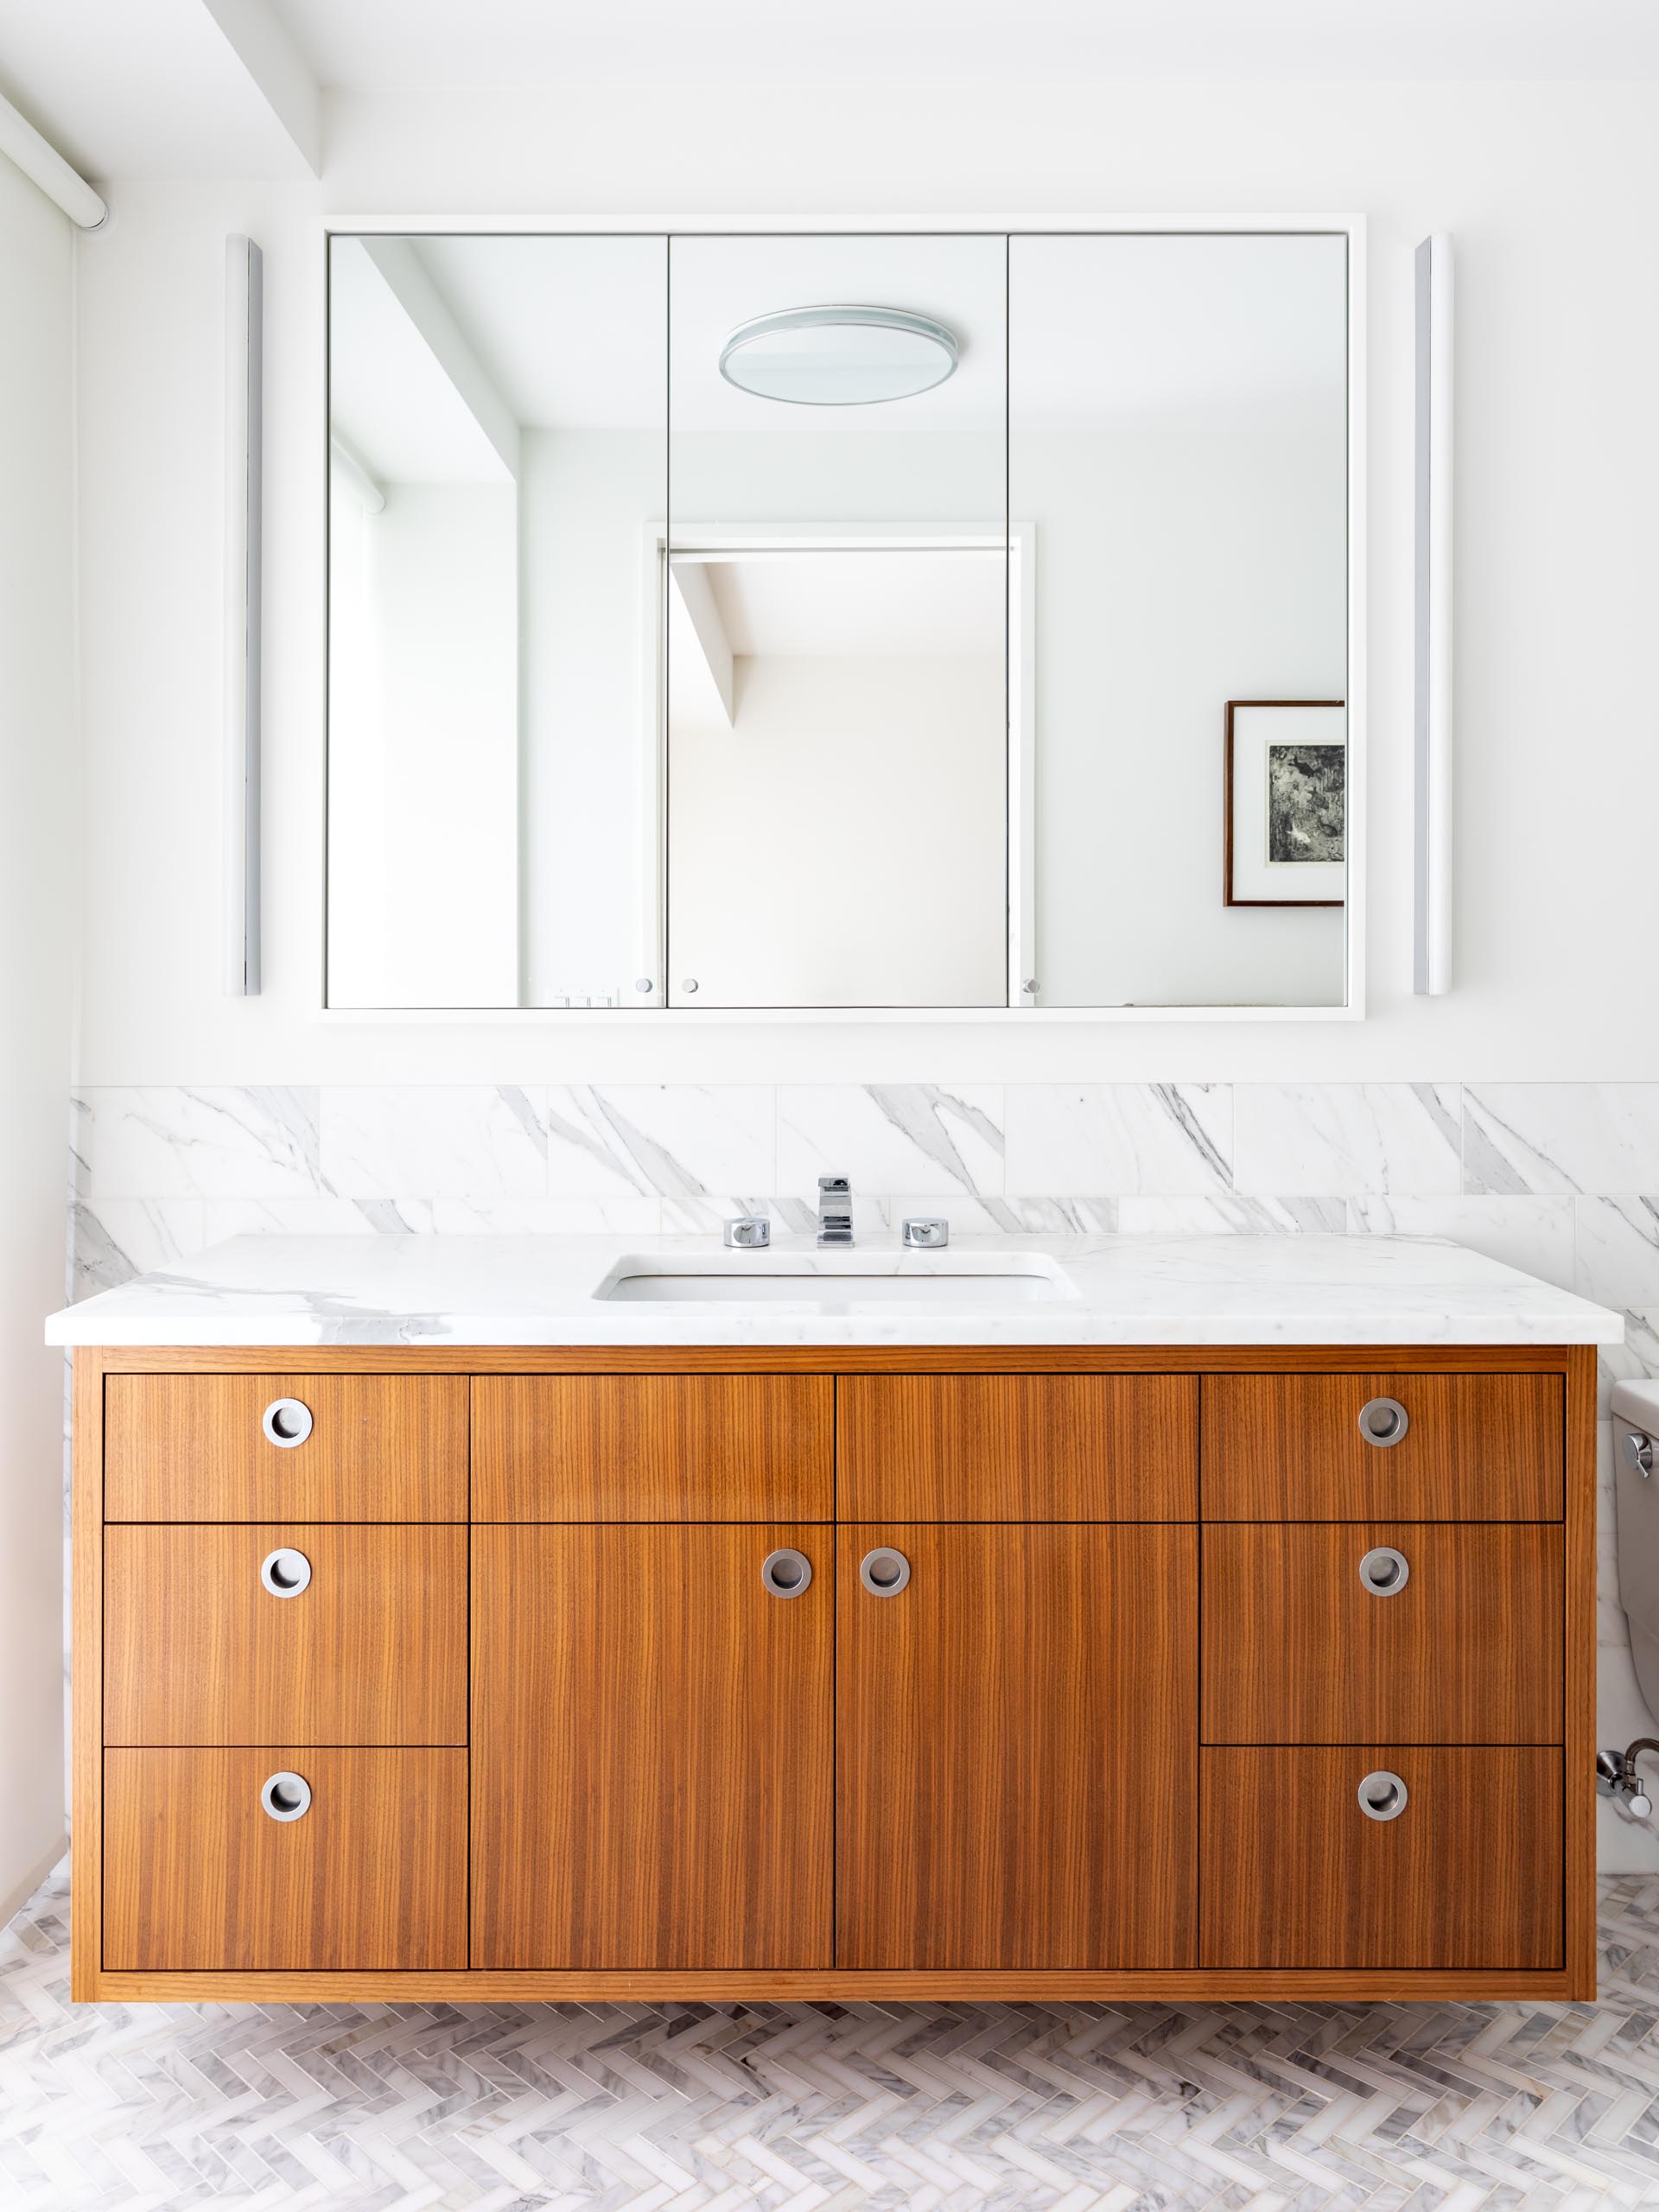 В этой современной ванной комнате есть парящий деревянный туалетный столик с трехпанельным зеркалом, прикрепленным к стене, и мраморный фартук, который продолжается до душа.